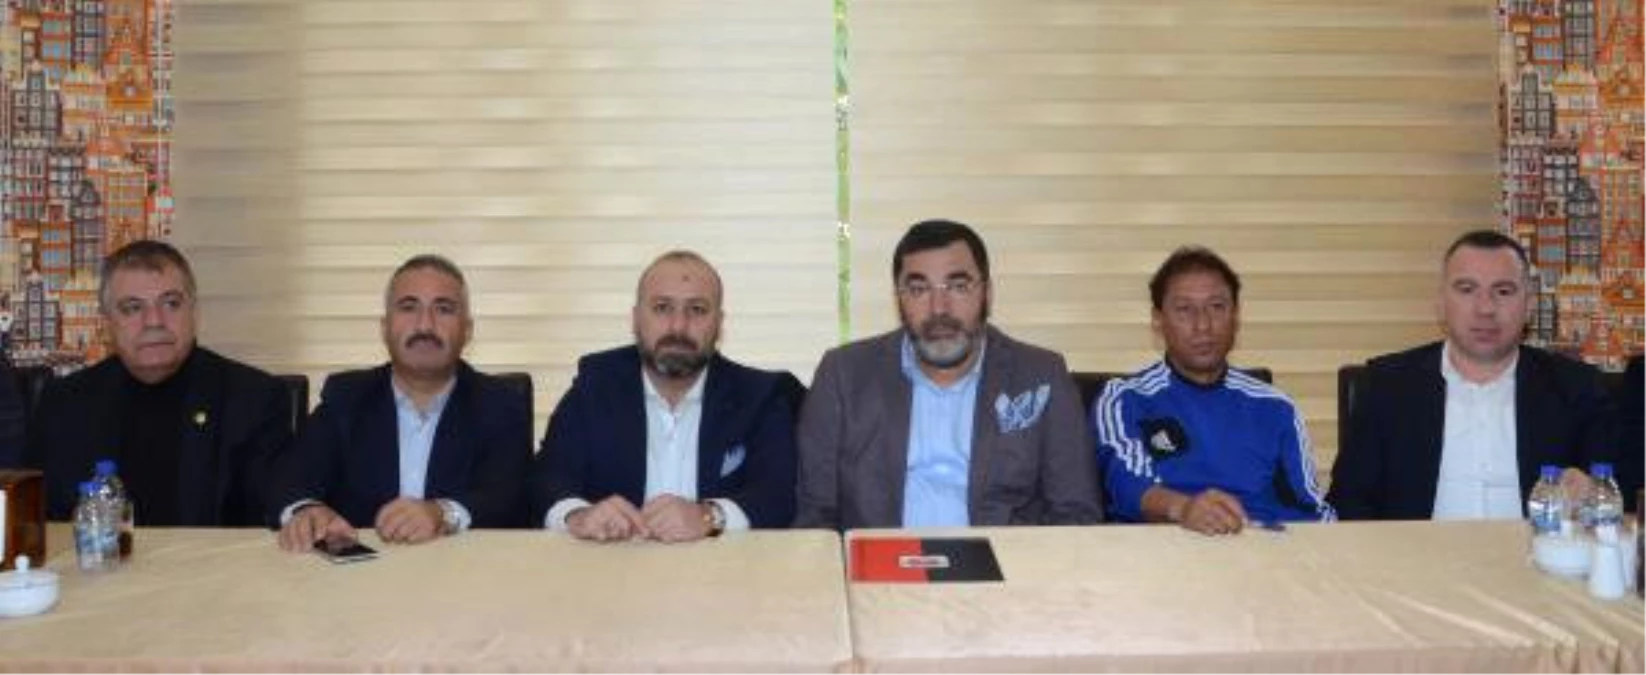 Gaziantepspor Başkanı Durmaz: "Yardım Kampanyası Başlatacağız"